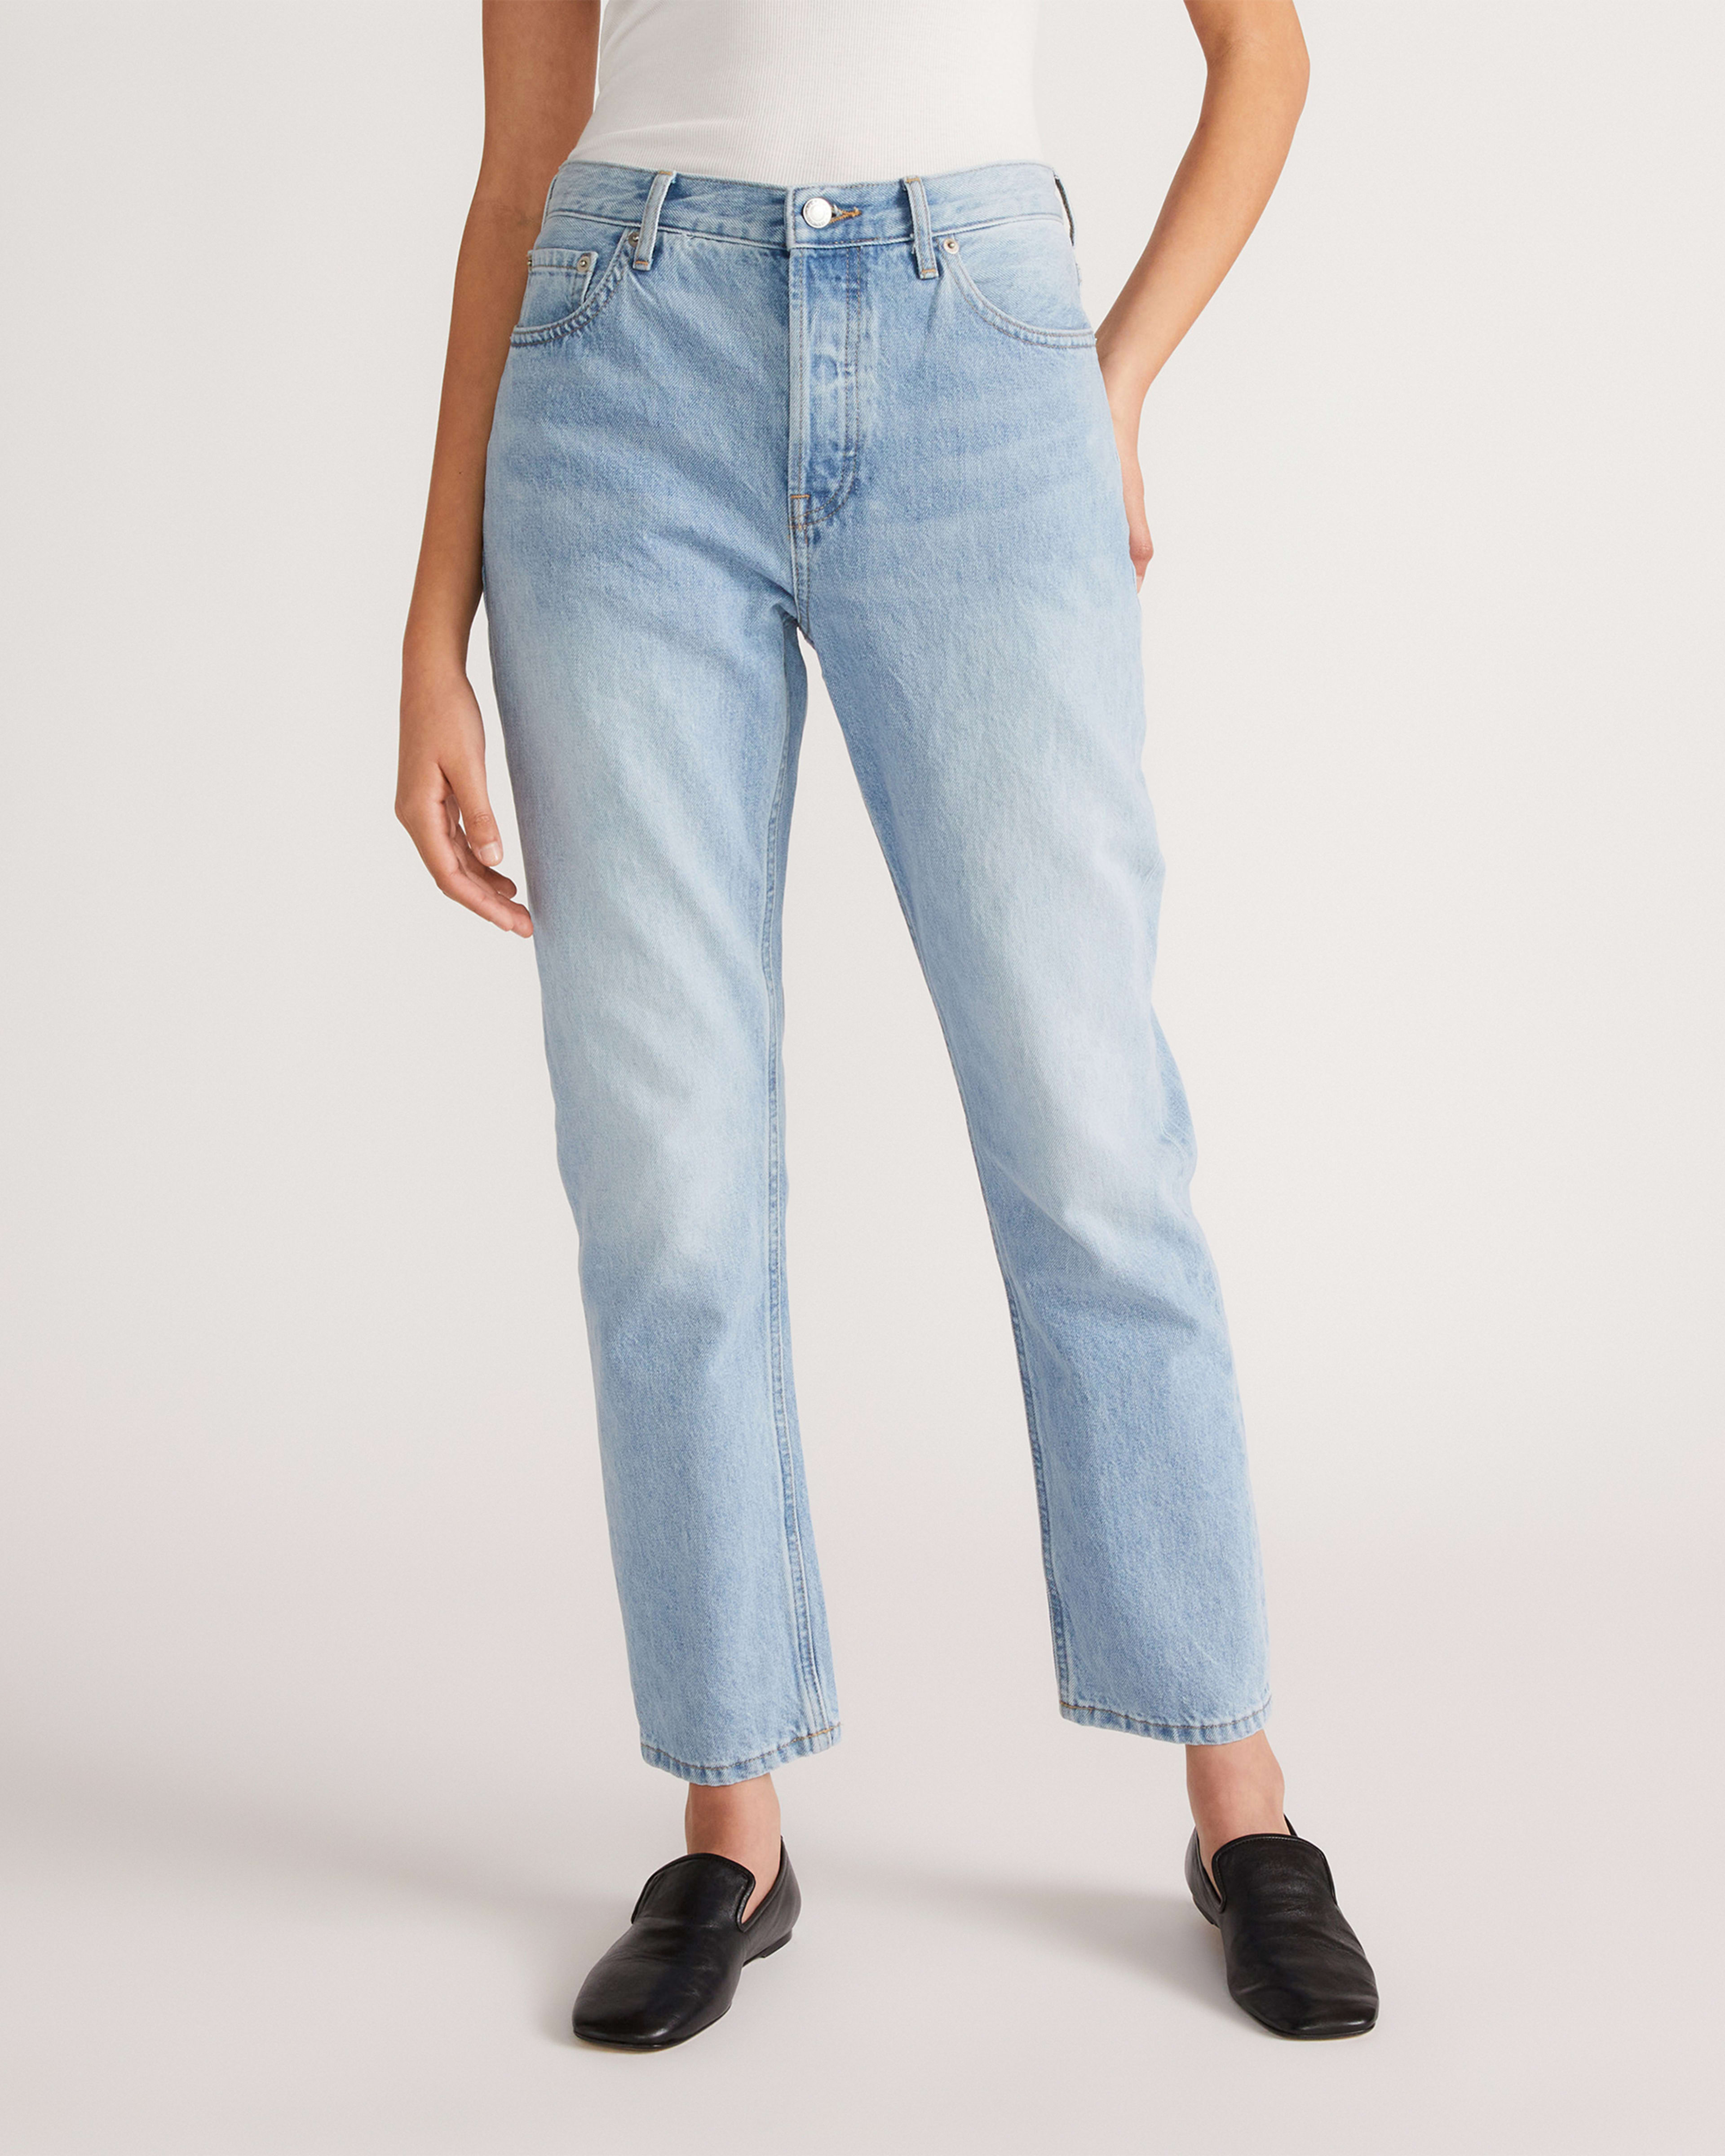 Vintage CHIC Jeans, Women's 90s Classic Fit Straight Leg Denim